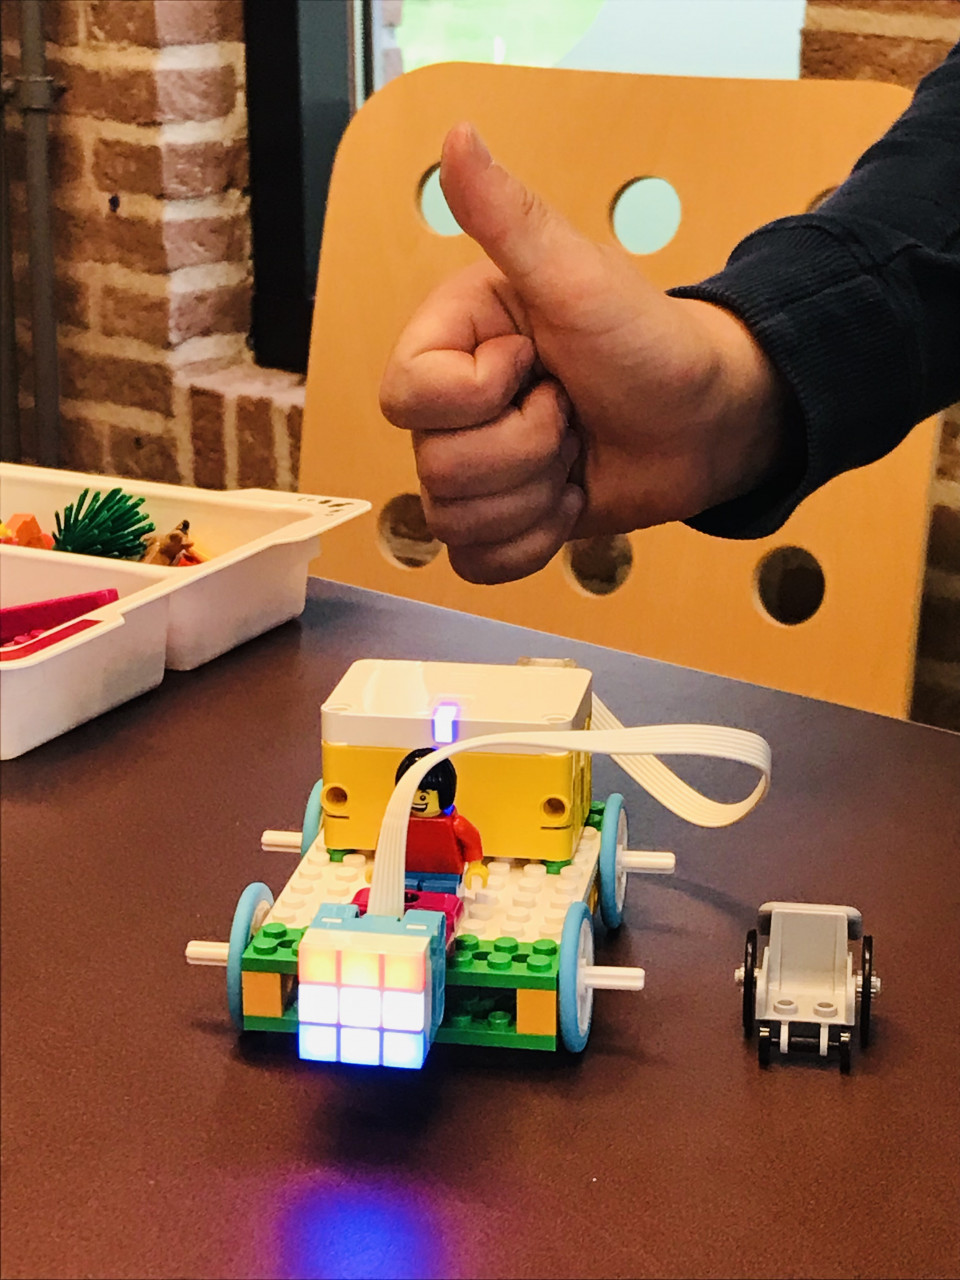 Fabian, Jack, Milano, Gijsbert en Jasper hebben met deze Lego bouwwerken iets prachtigs neergezet. Welke foto is jouw favoriet?